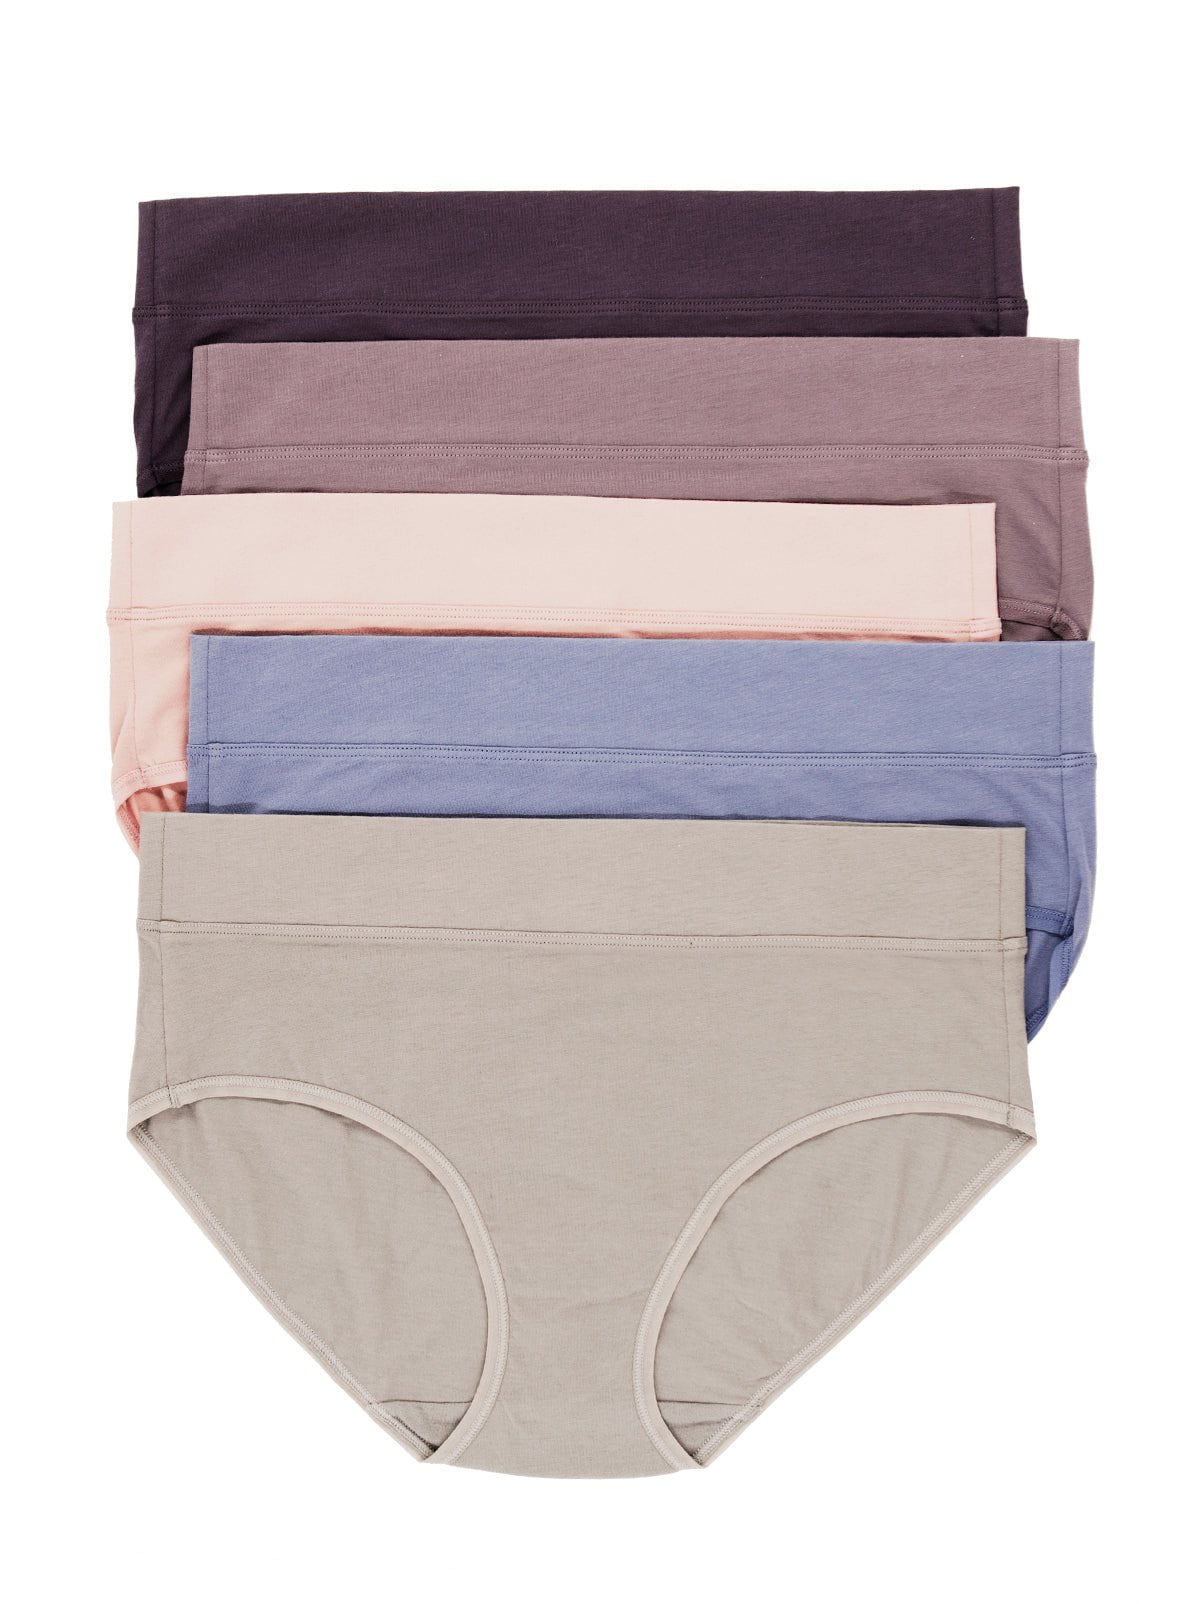 Pima Cotton Underwear Hipster 5-Pack